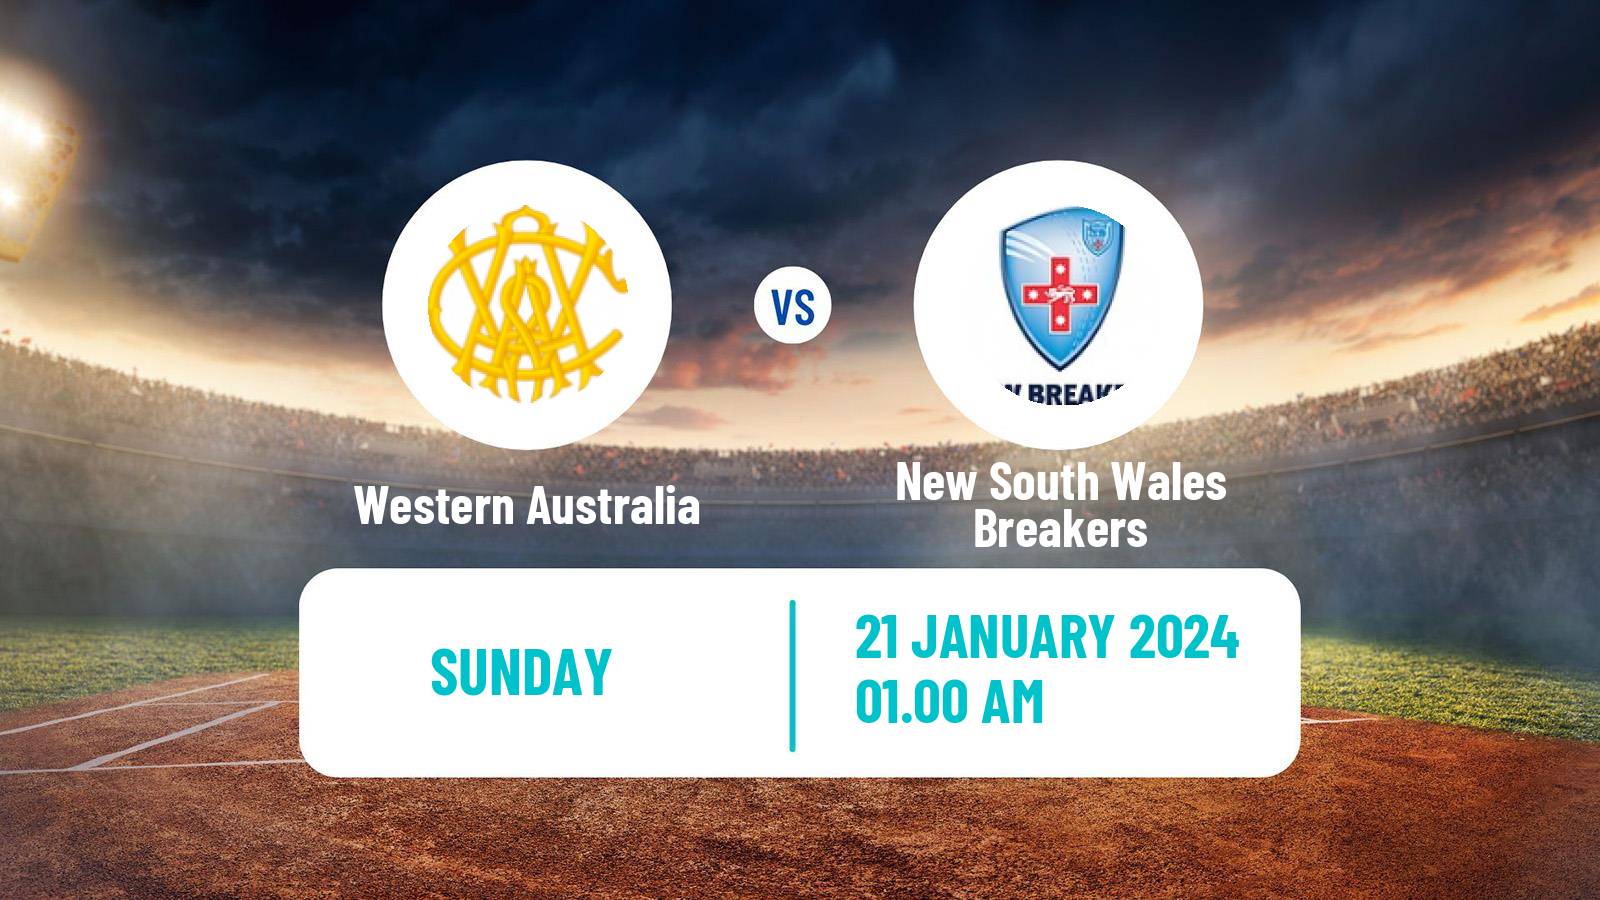 Cricket Australian National League Cricket Women Western Australia - New South Wales Breakers